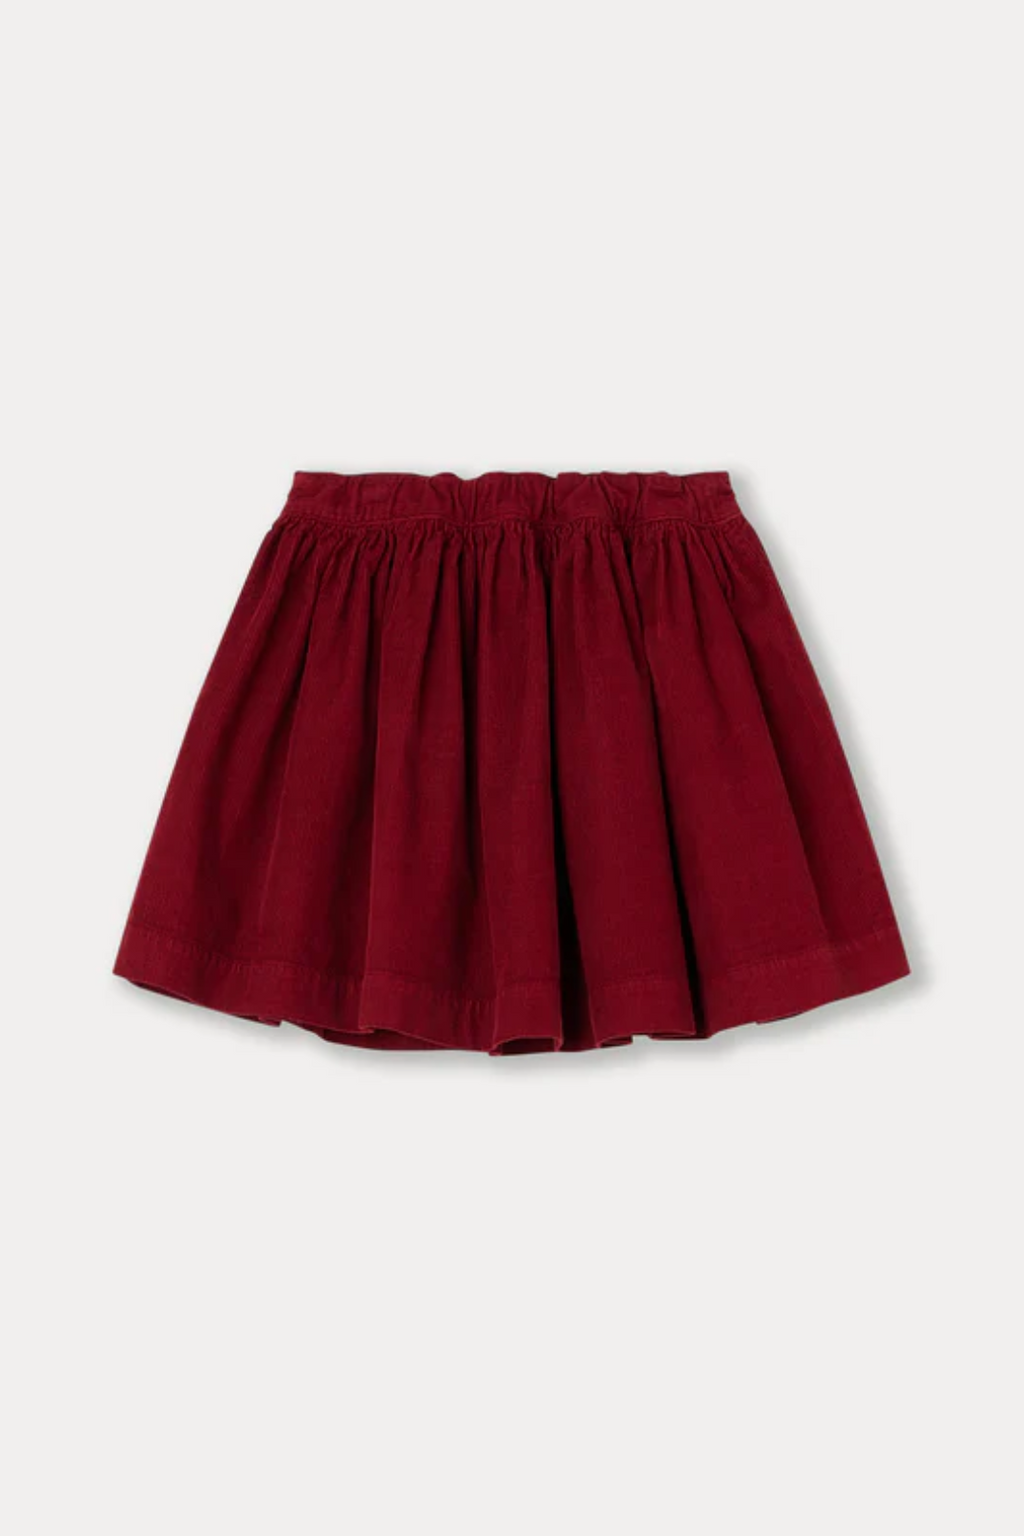 Suzon skirt